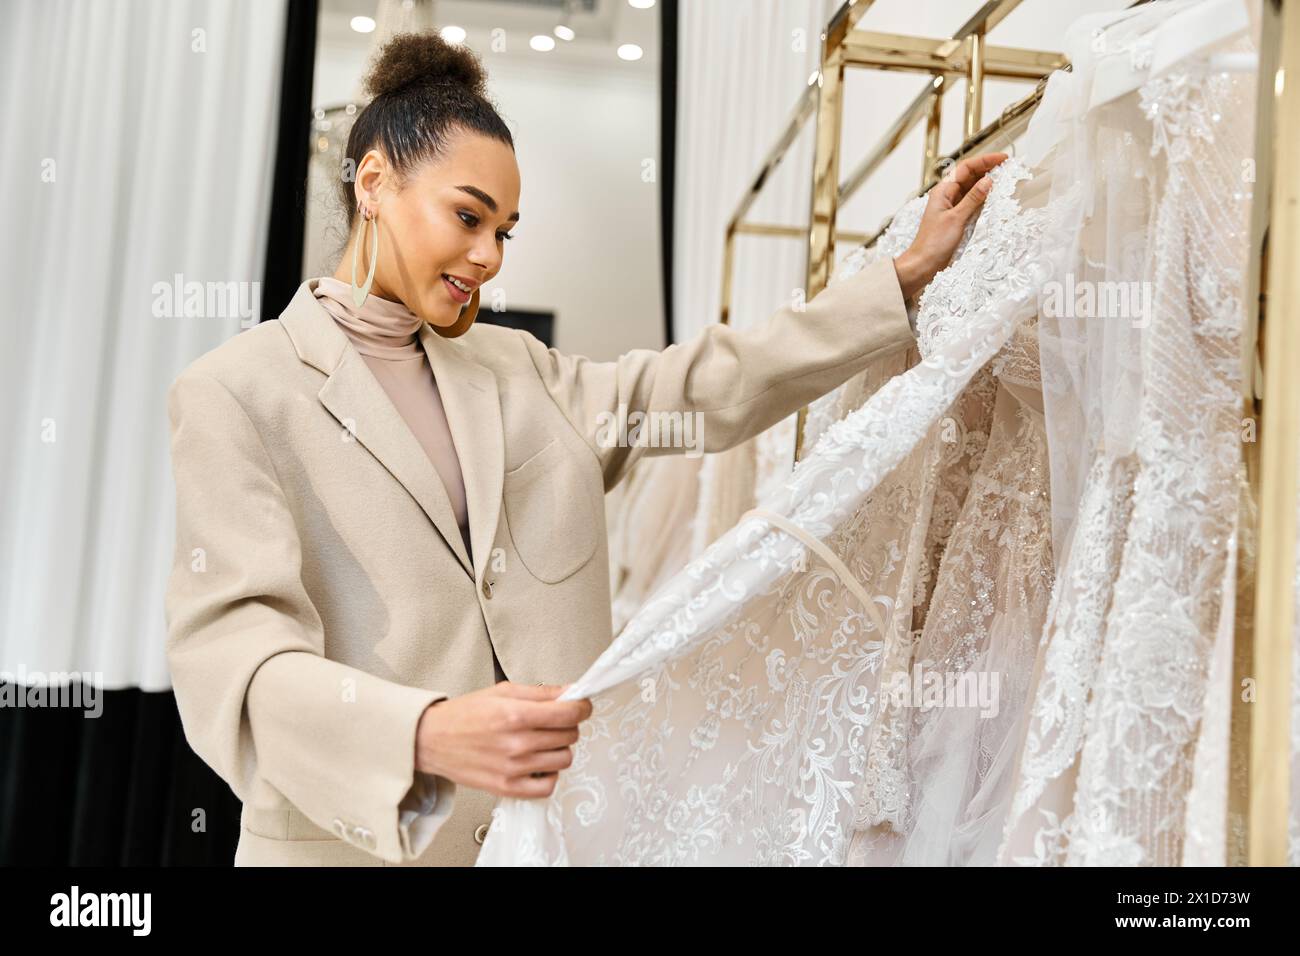 Eine junge, schöne Braut untersucht sorgfältig ein Hochzeitskleid auf einem Ständer Stockfoto